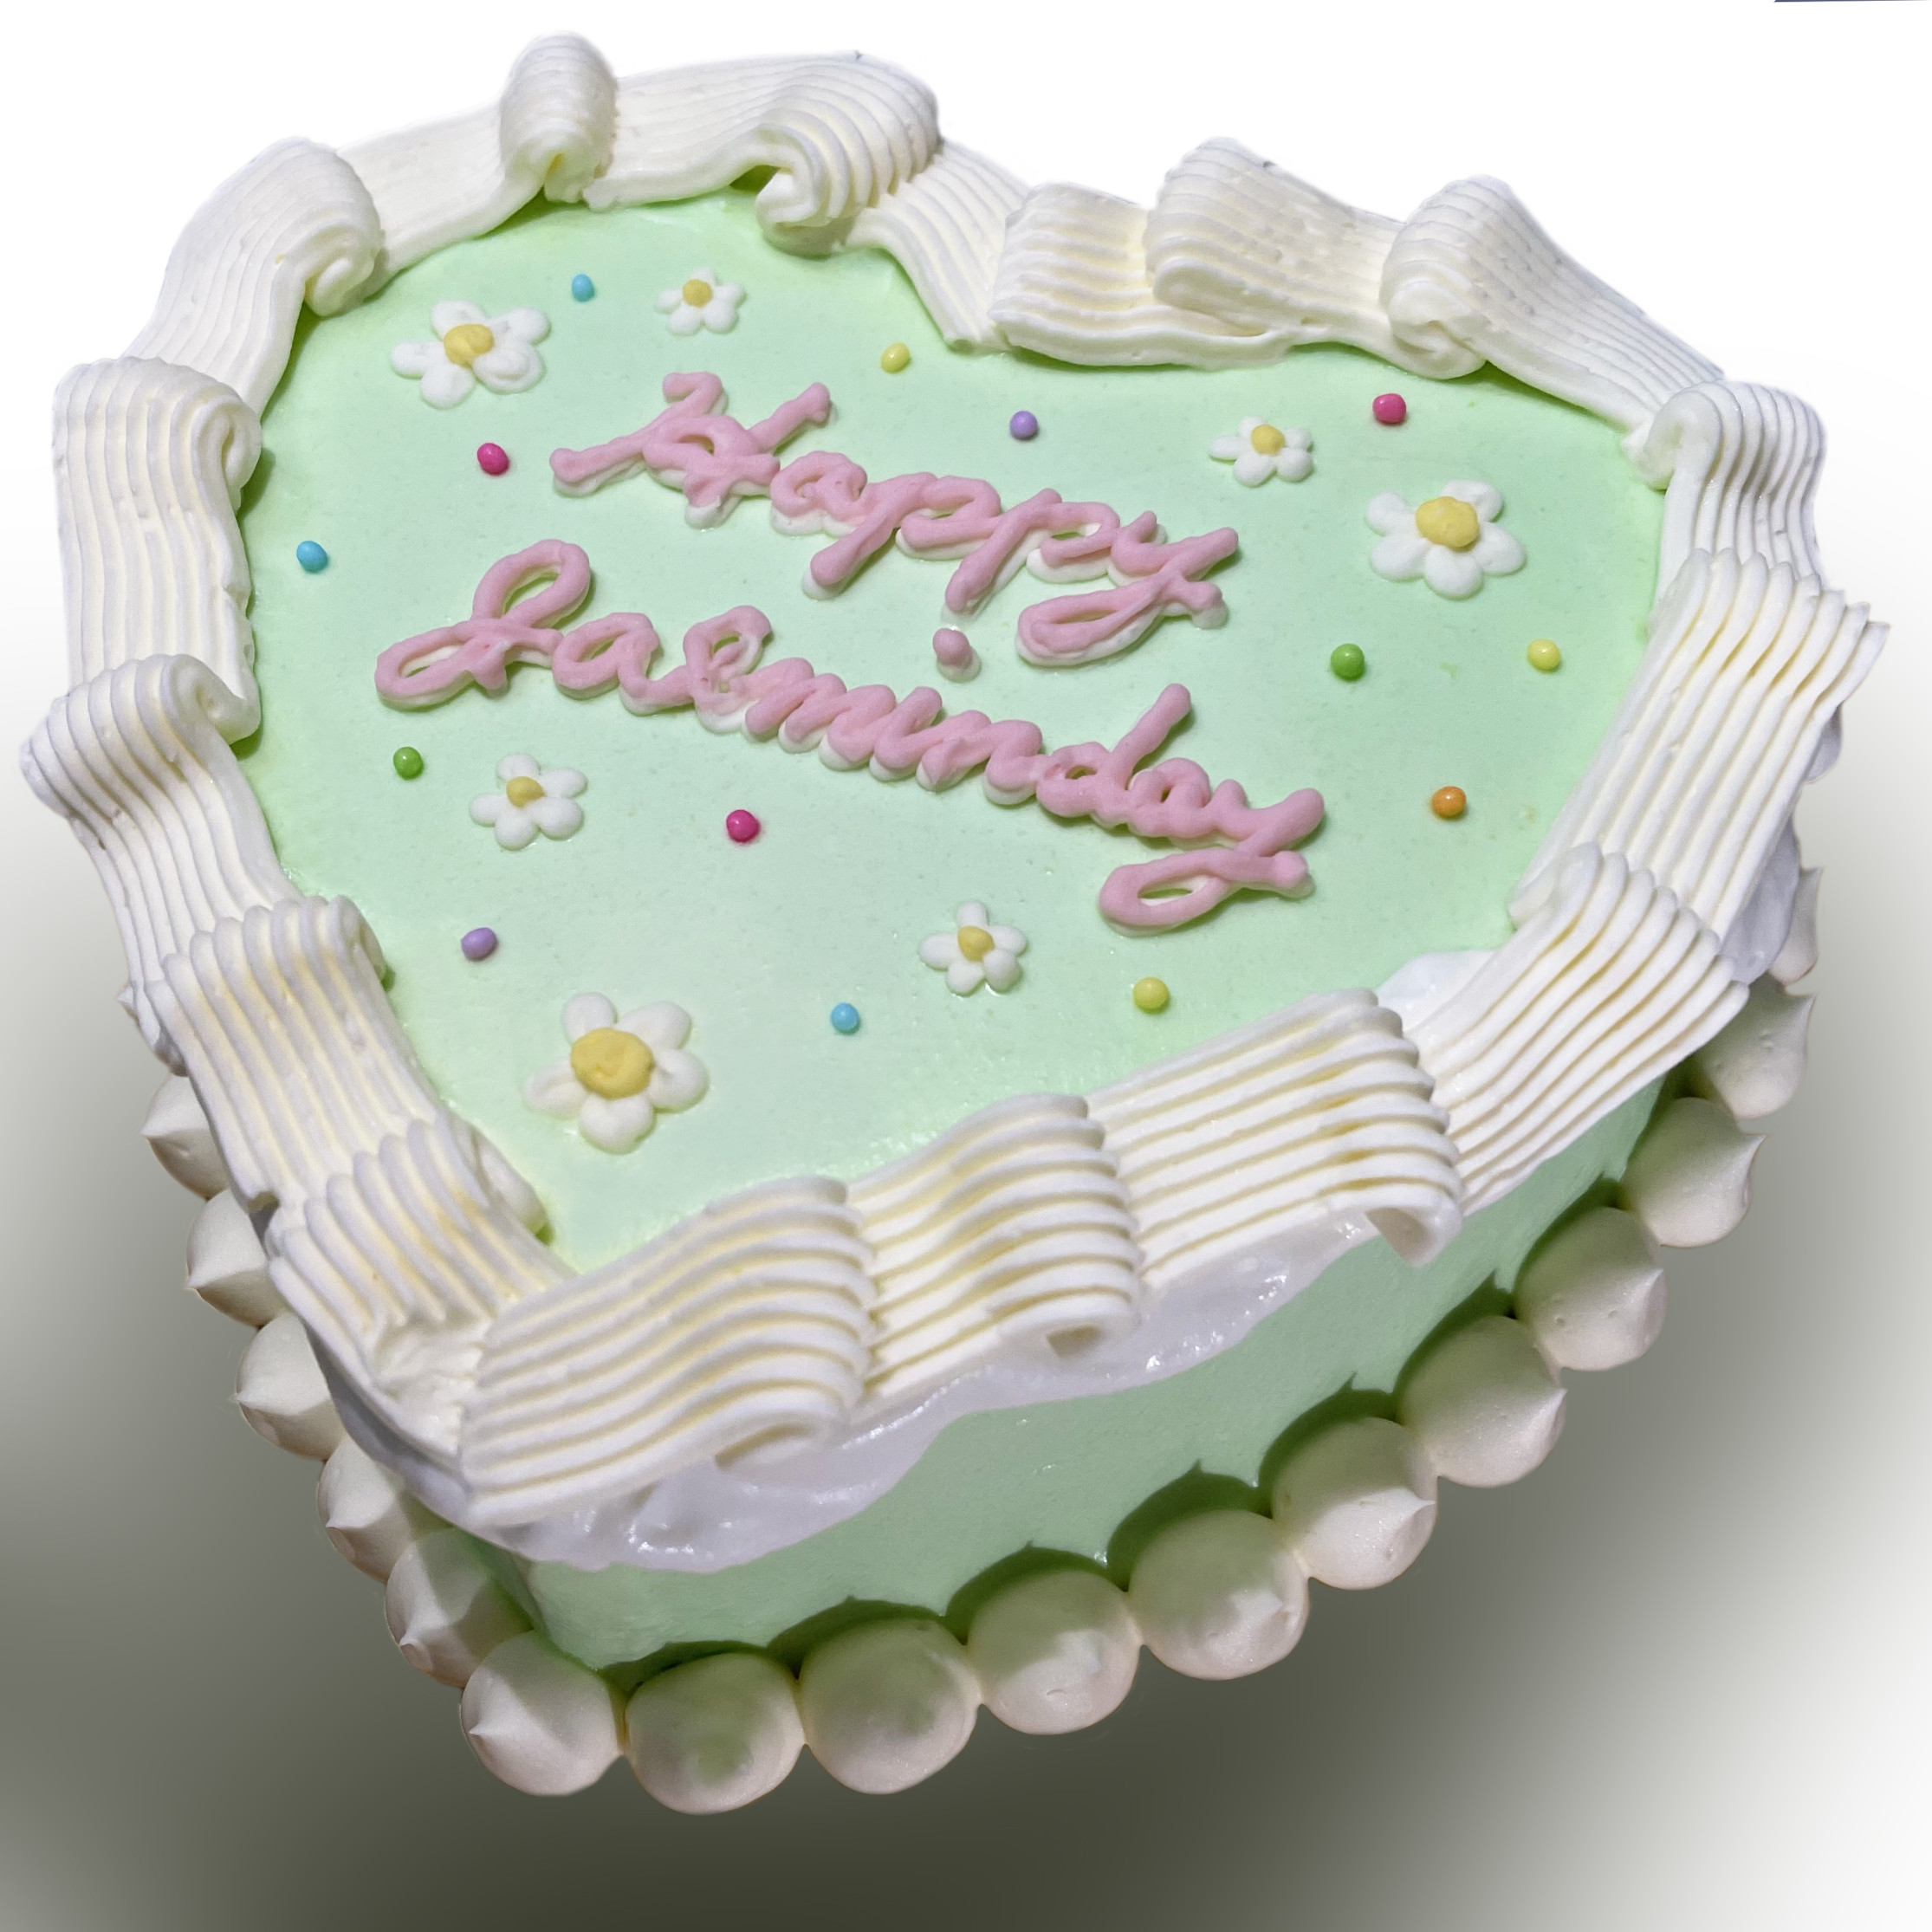 韓国発 誕生日ケーキ「センイルケーキ」5号 | 誕生日ケーキのお店